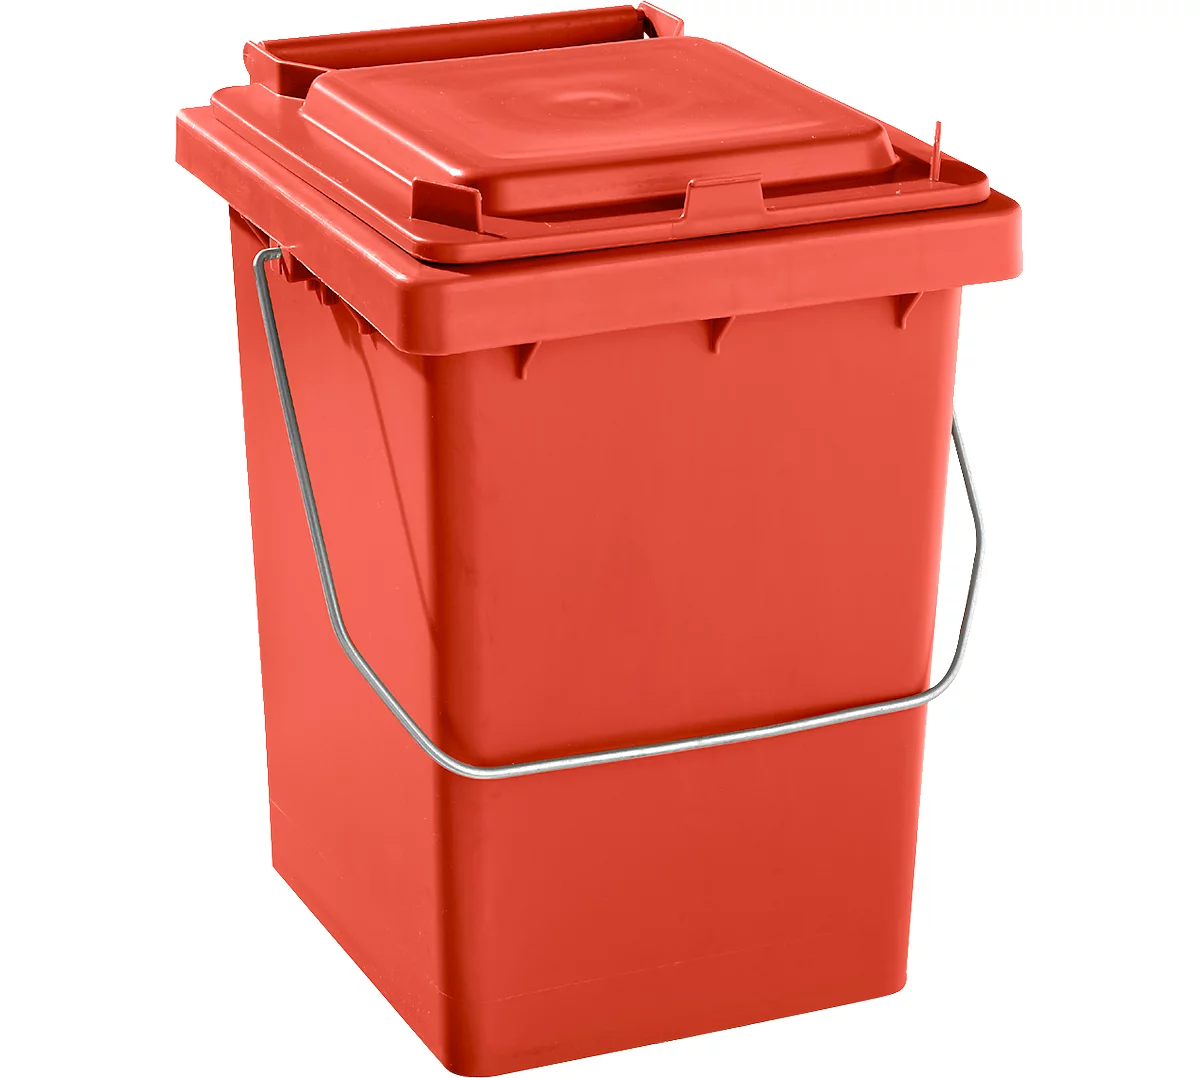 Voorsorteeremmer Mülli, B 175 x D 195 x H 300 mm, 10 liter, rood